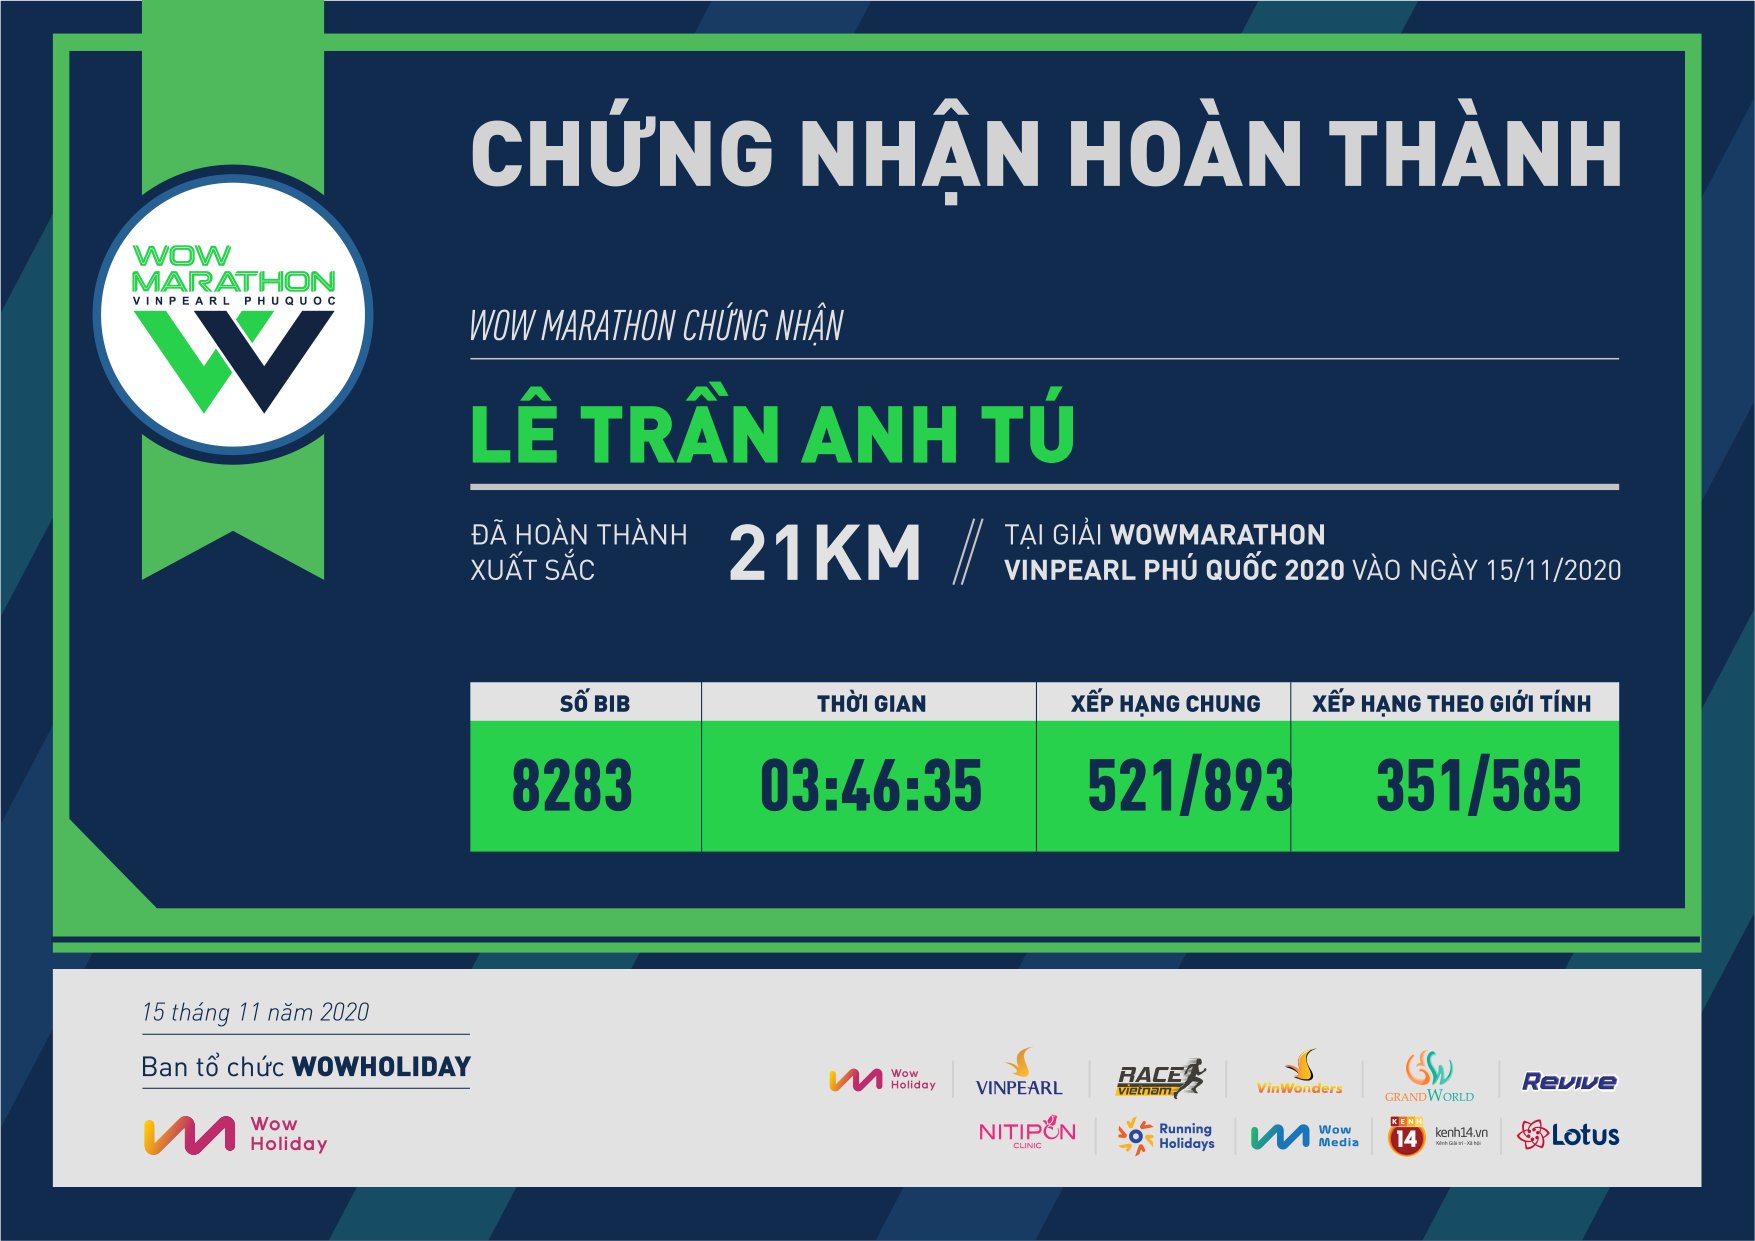 8283 - Lê Trần Anh Tú